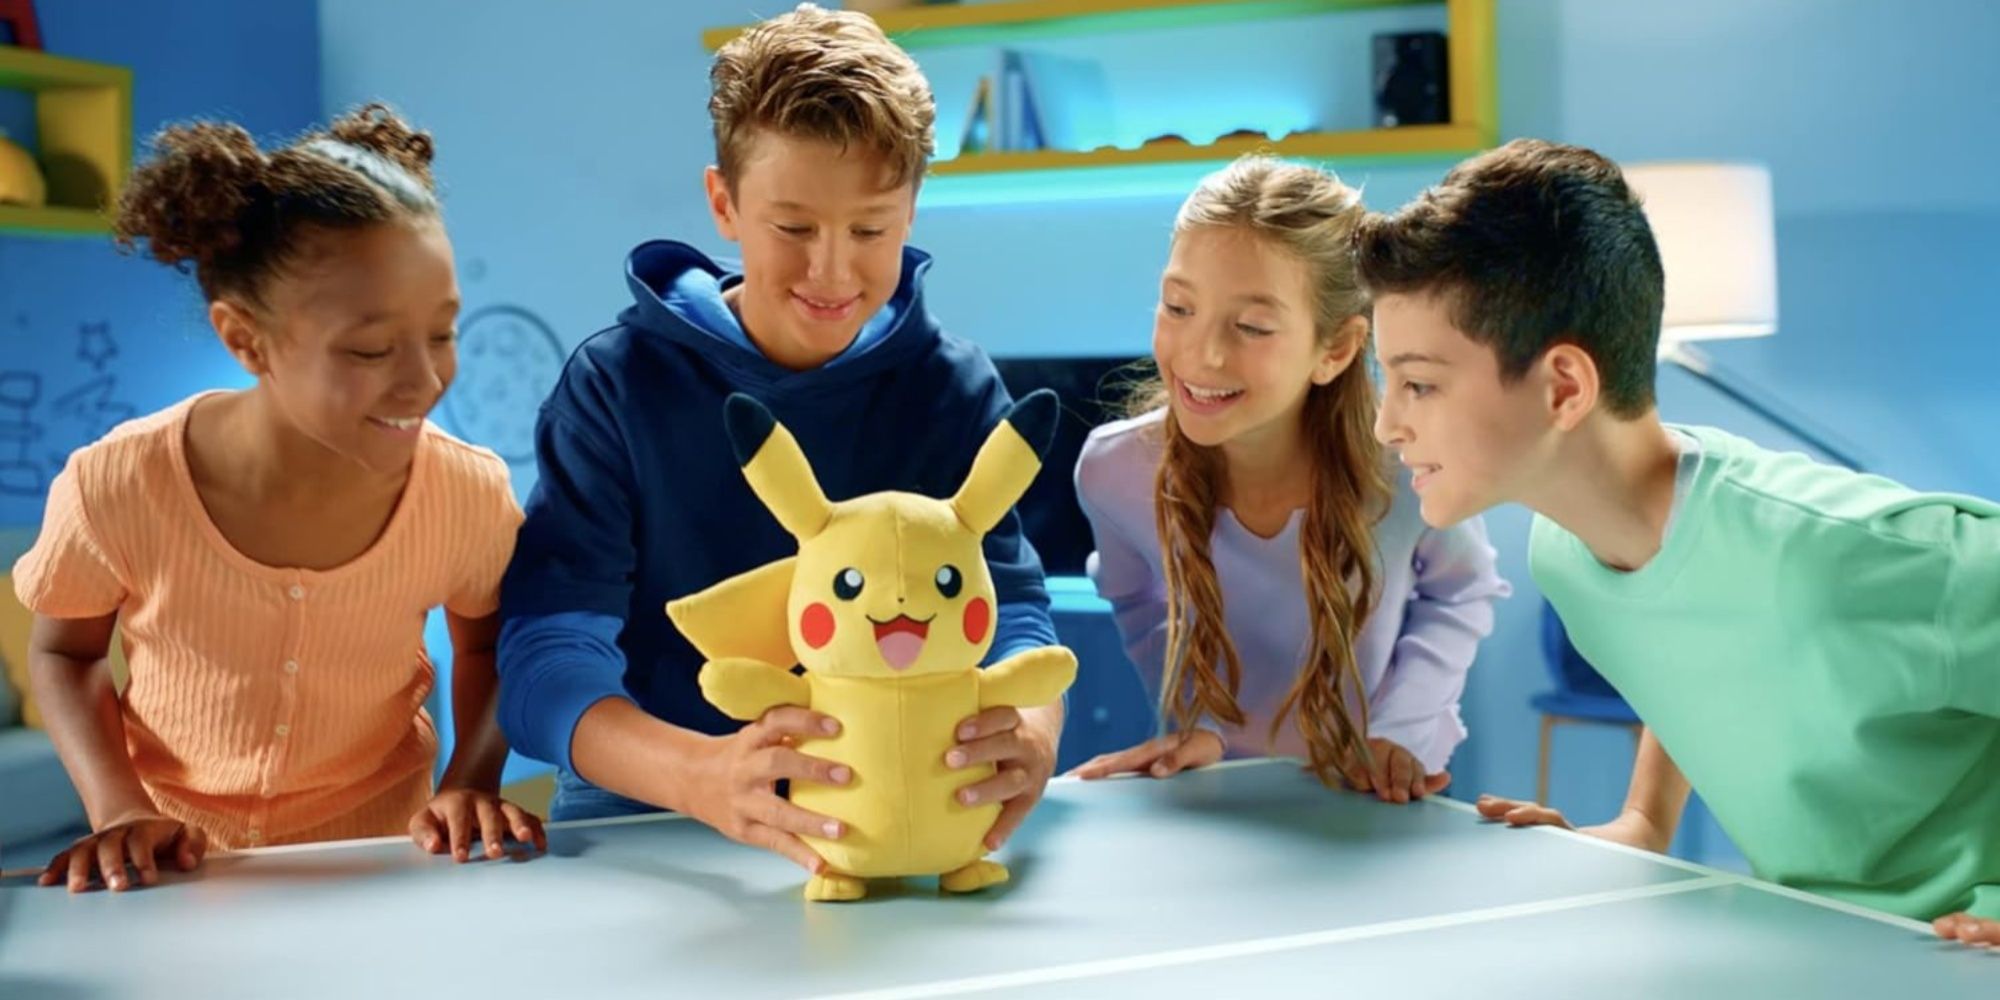 kids playing with a pikachu plush